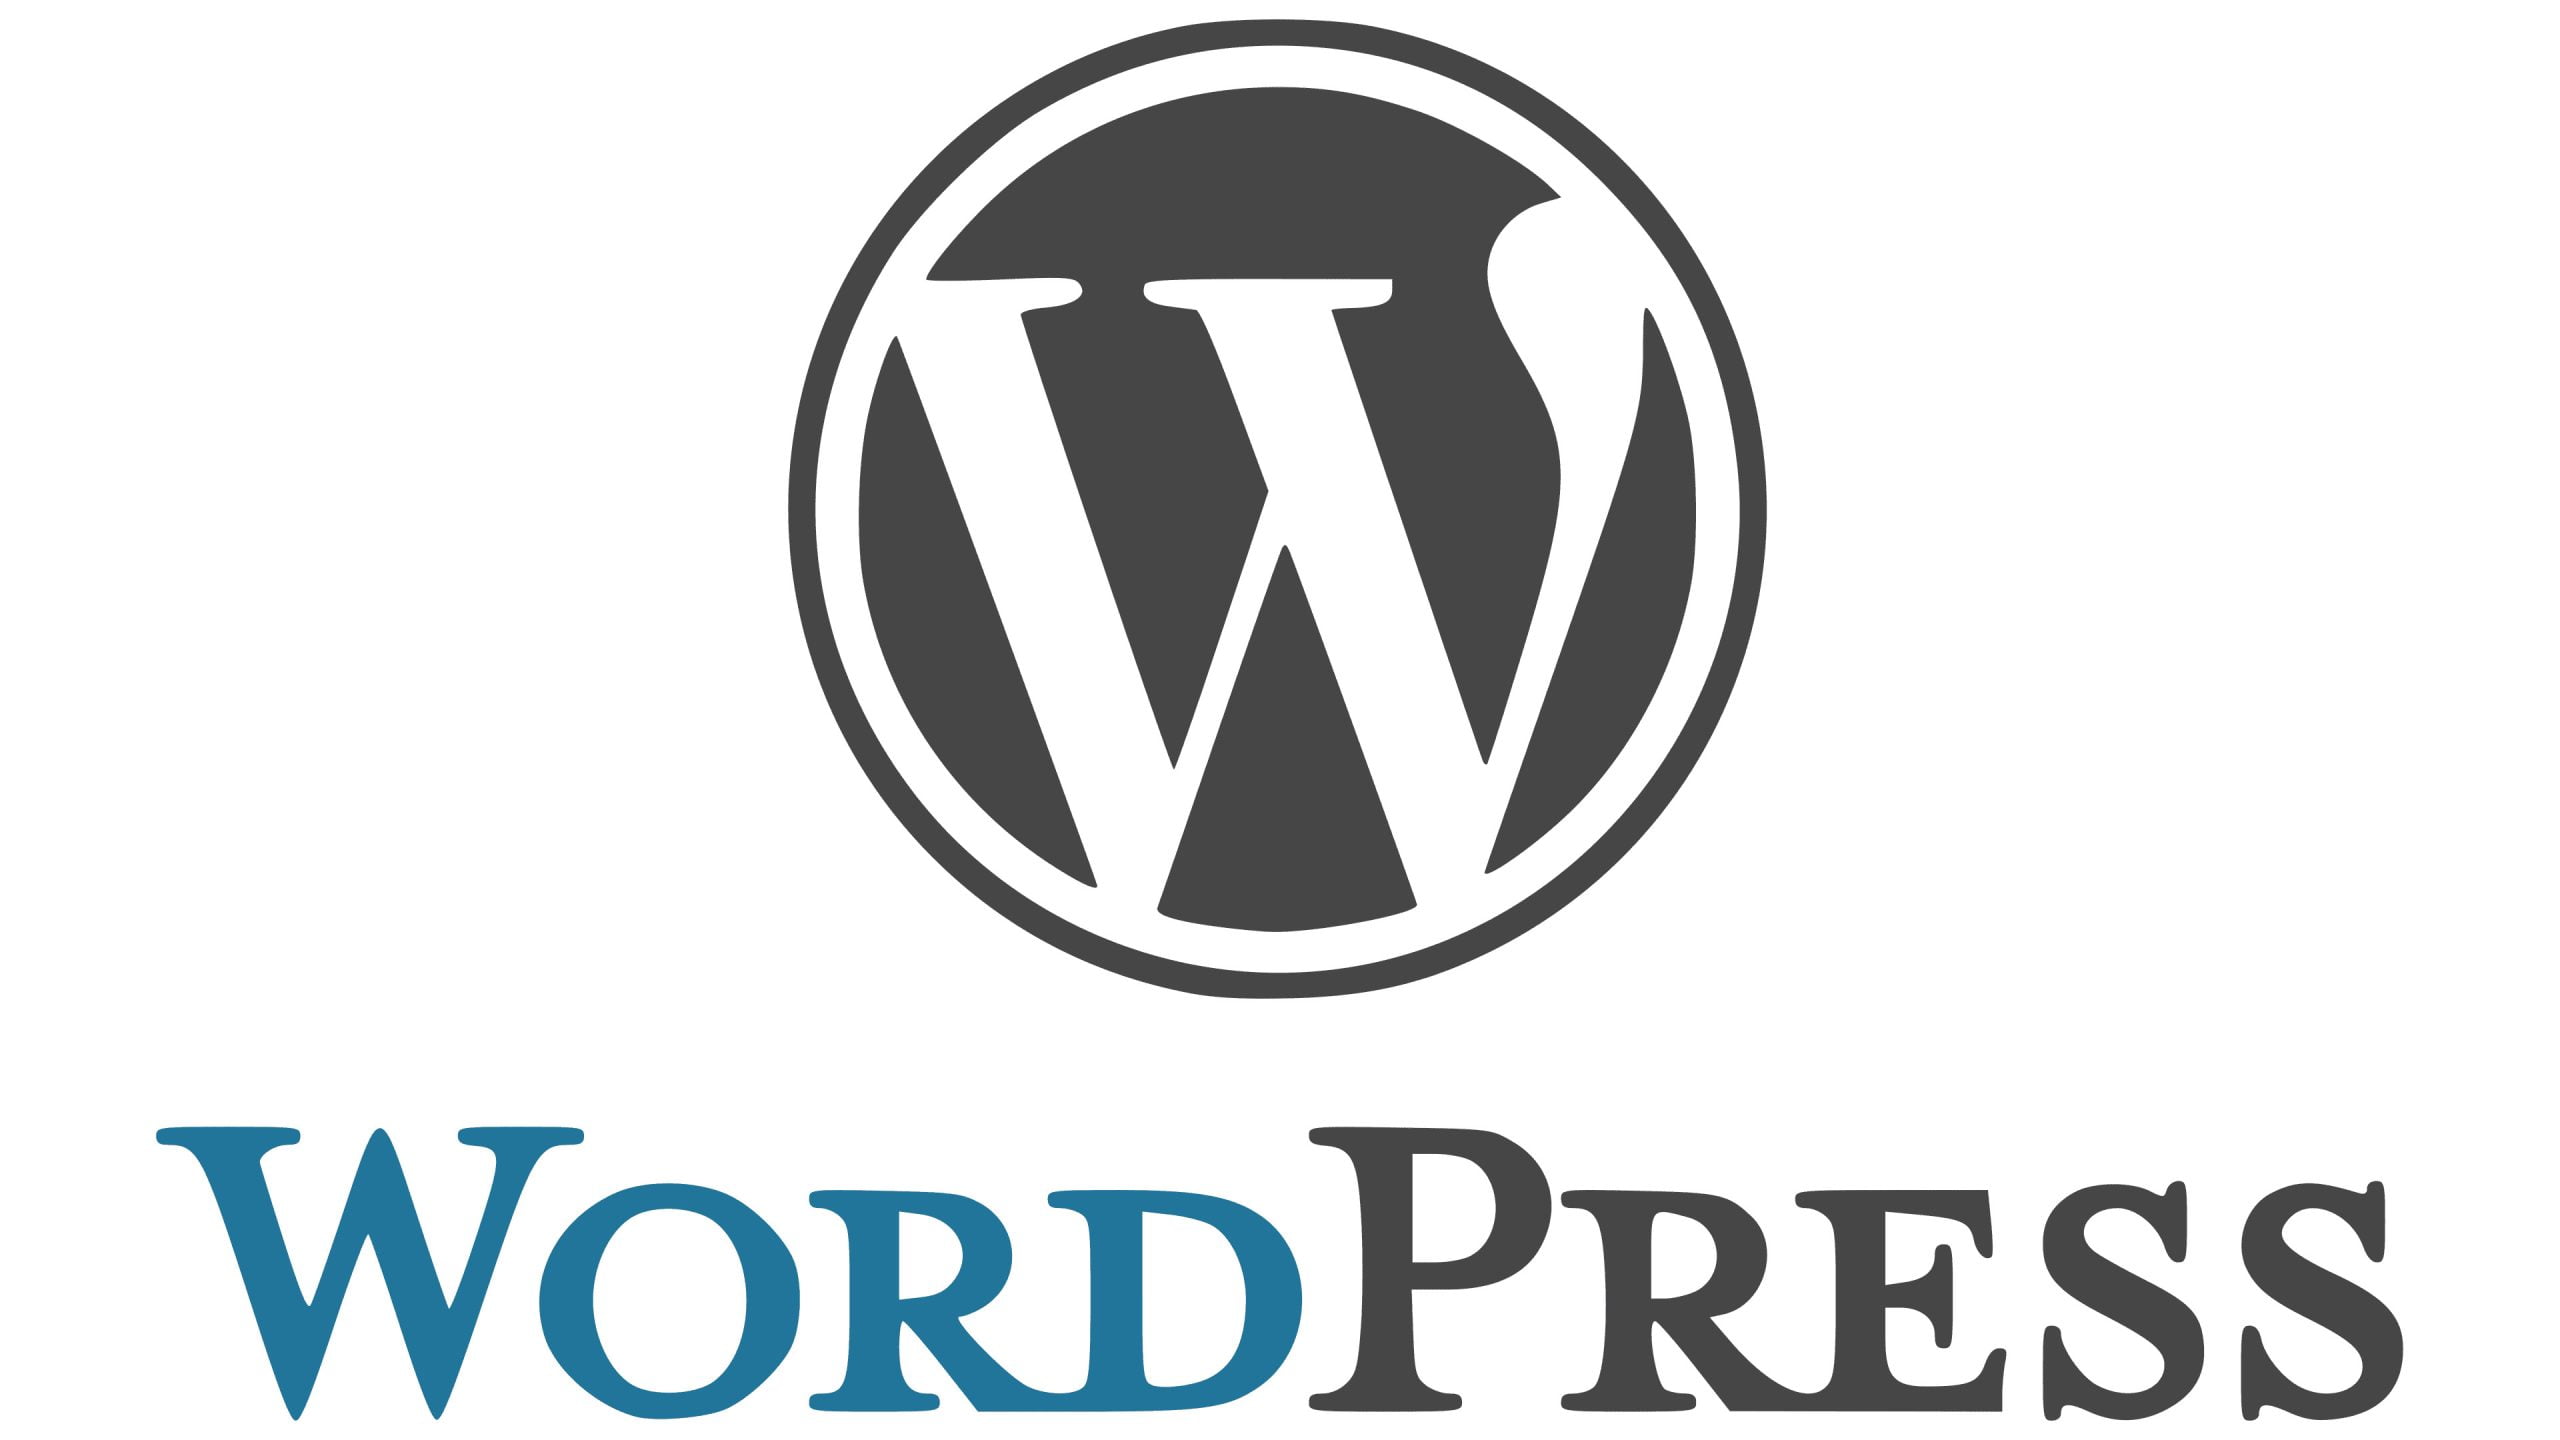 WordPress - Digital Marketing